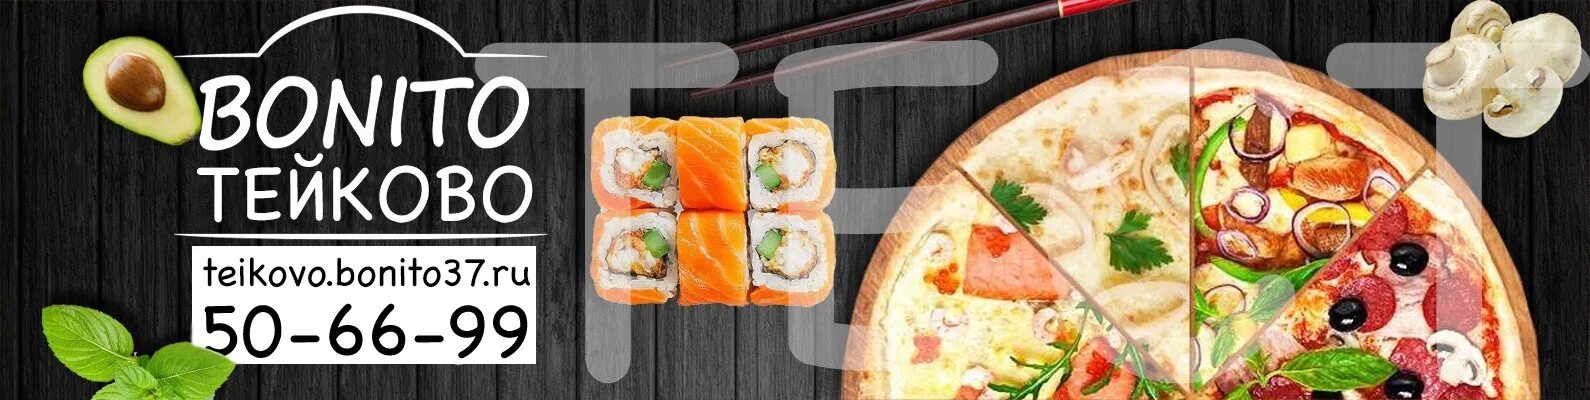 Вок видное. Баннер суши пицца реклама. Пицца и роллы реклама. Баннер для сайта суши и пиццы. Баннер доставка суши.